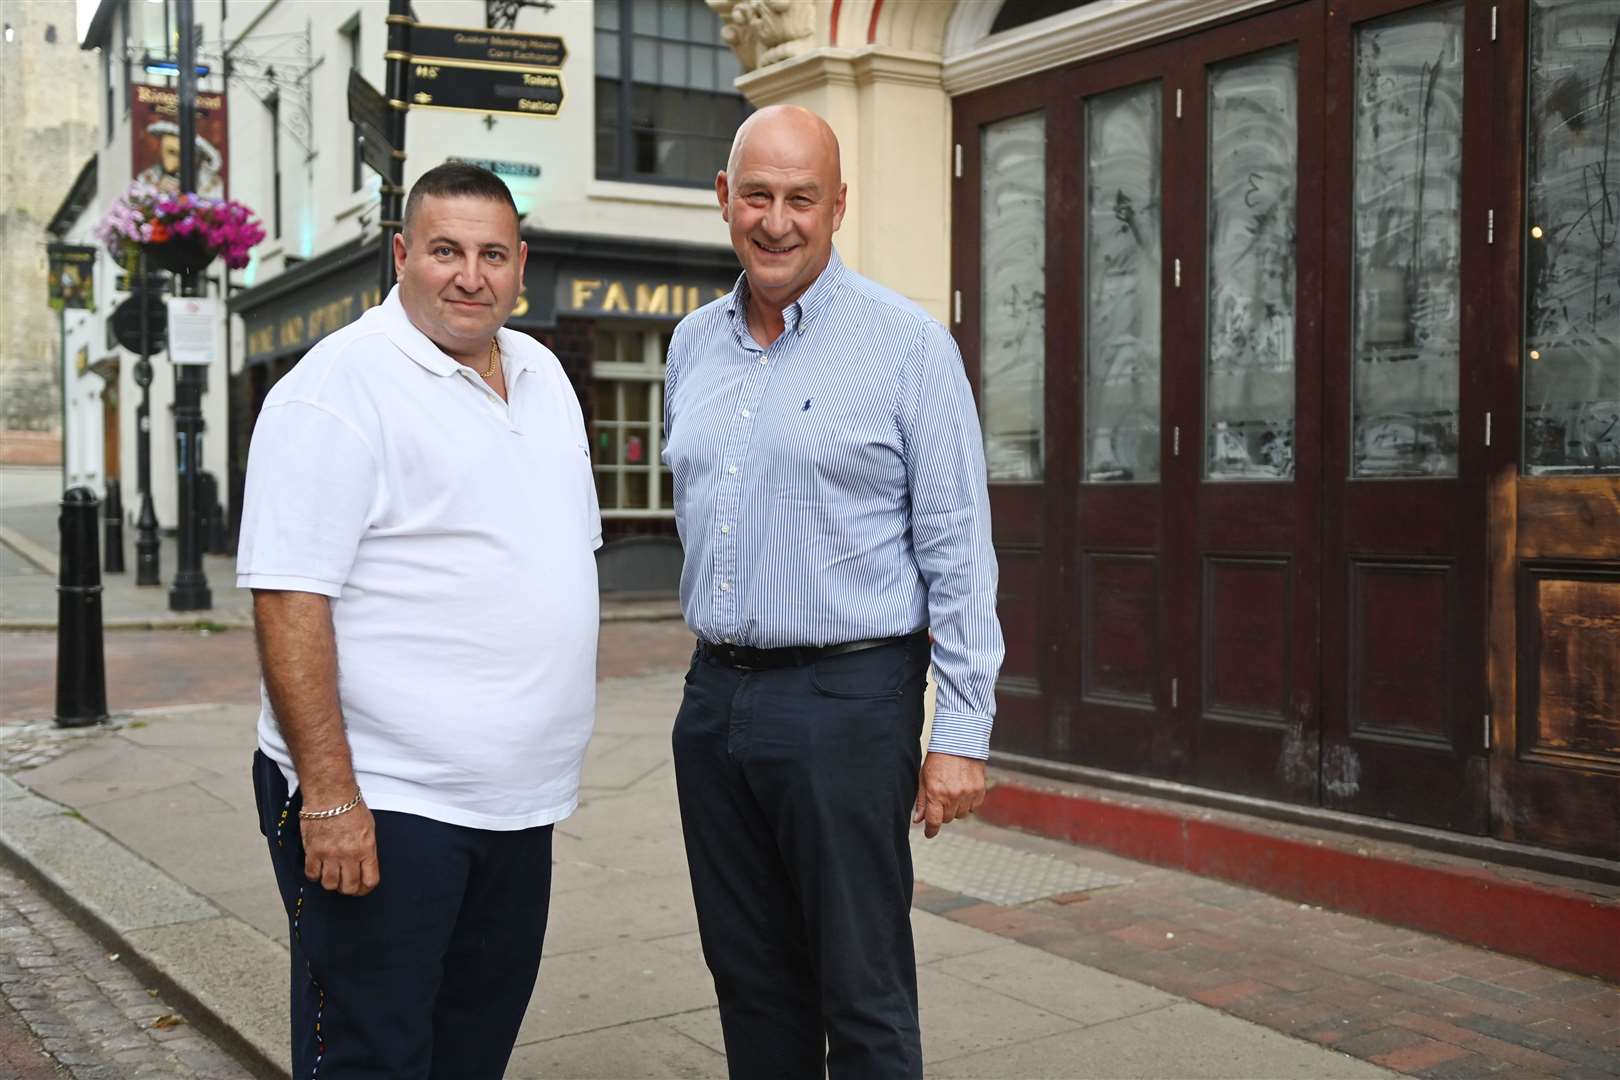 Alan Brett and Steve Pennington outside their new restaurant